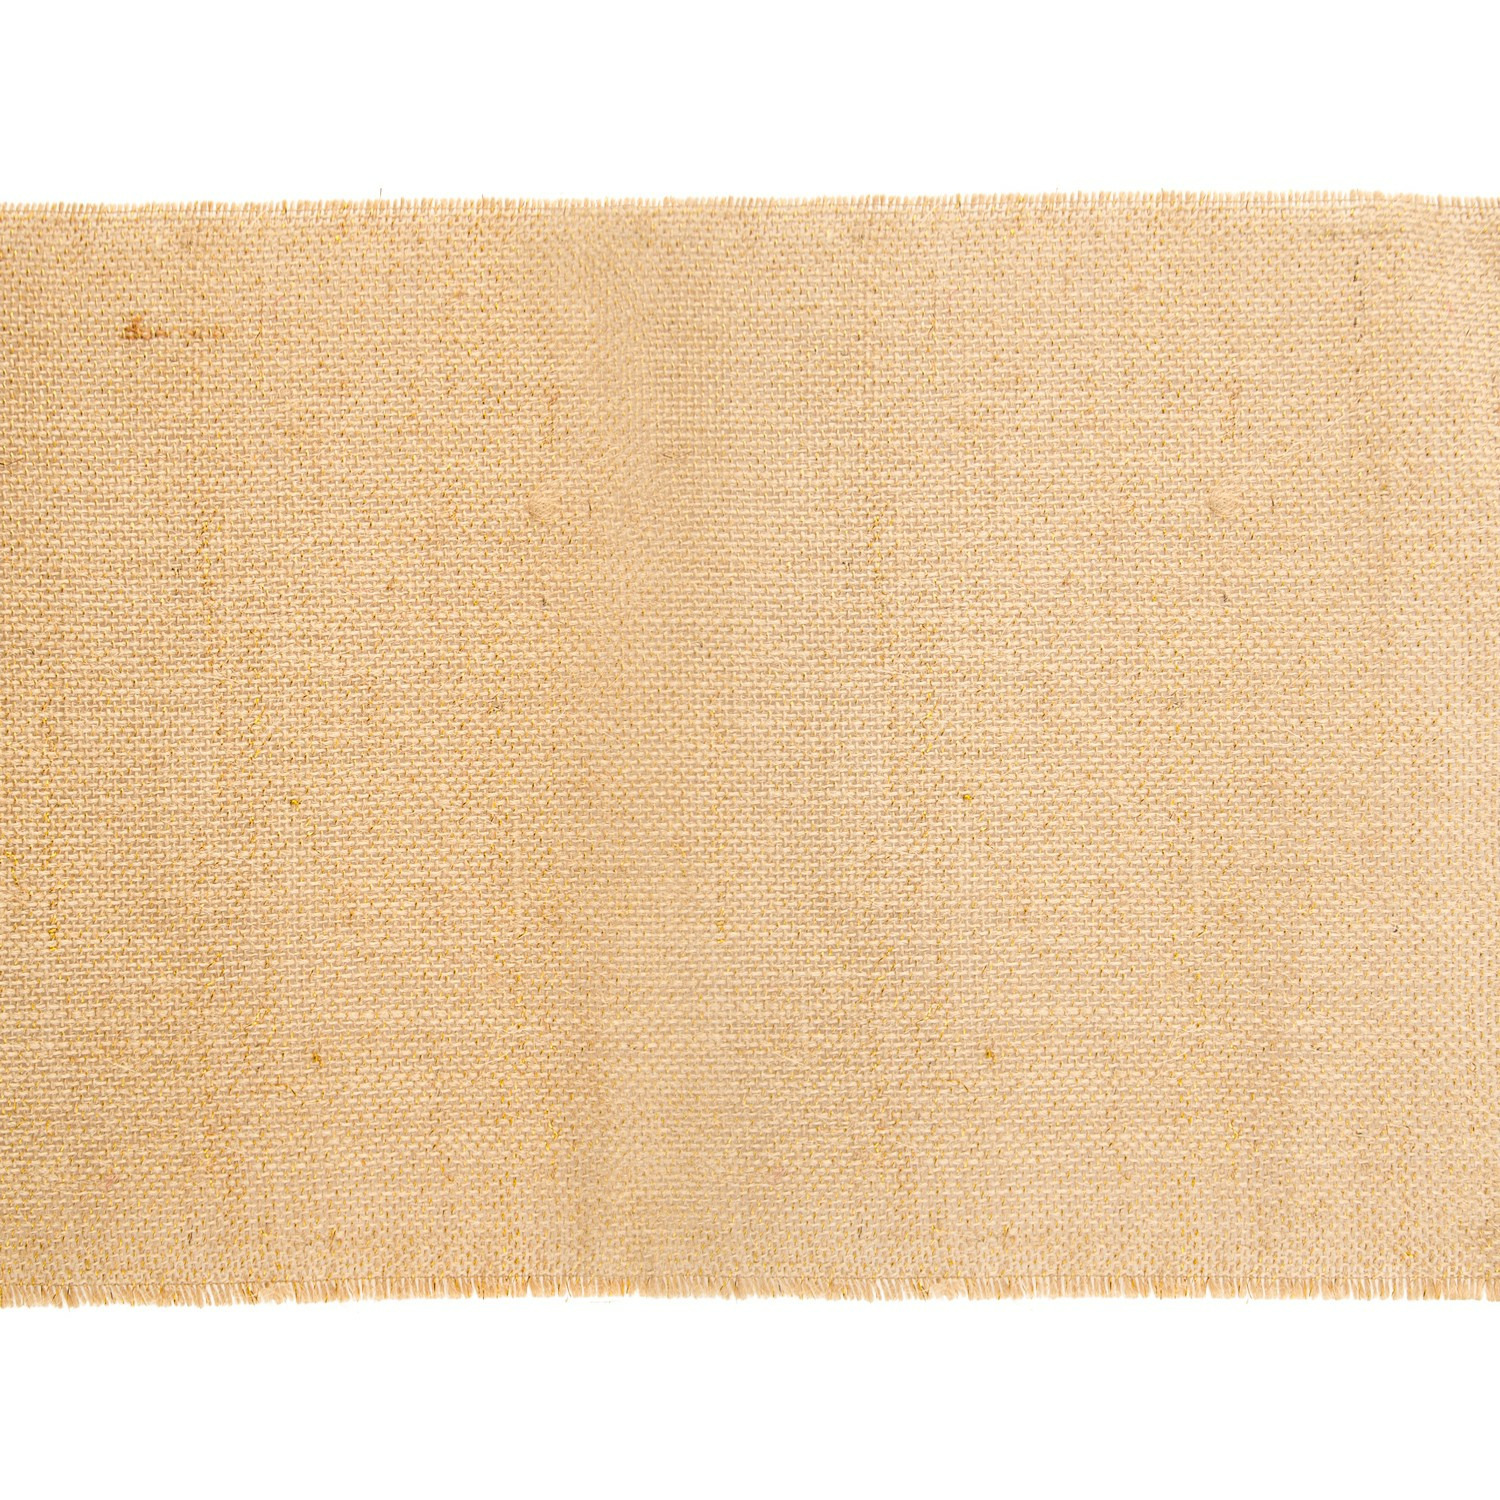 Chaks Jute tafelloper - 29 x 300 cm - beige met gouden draad erdoor -